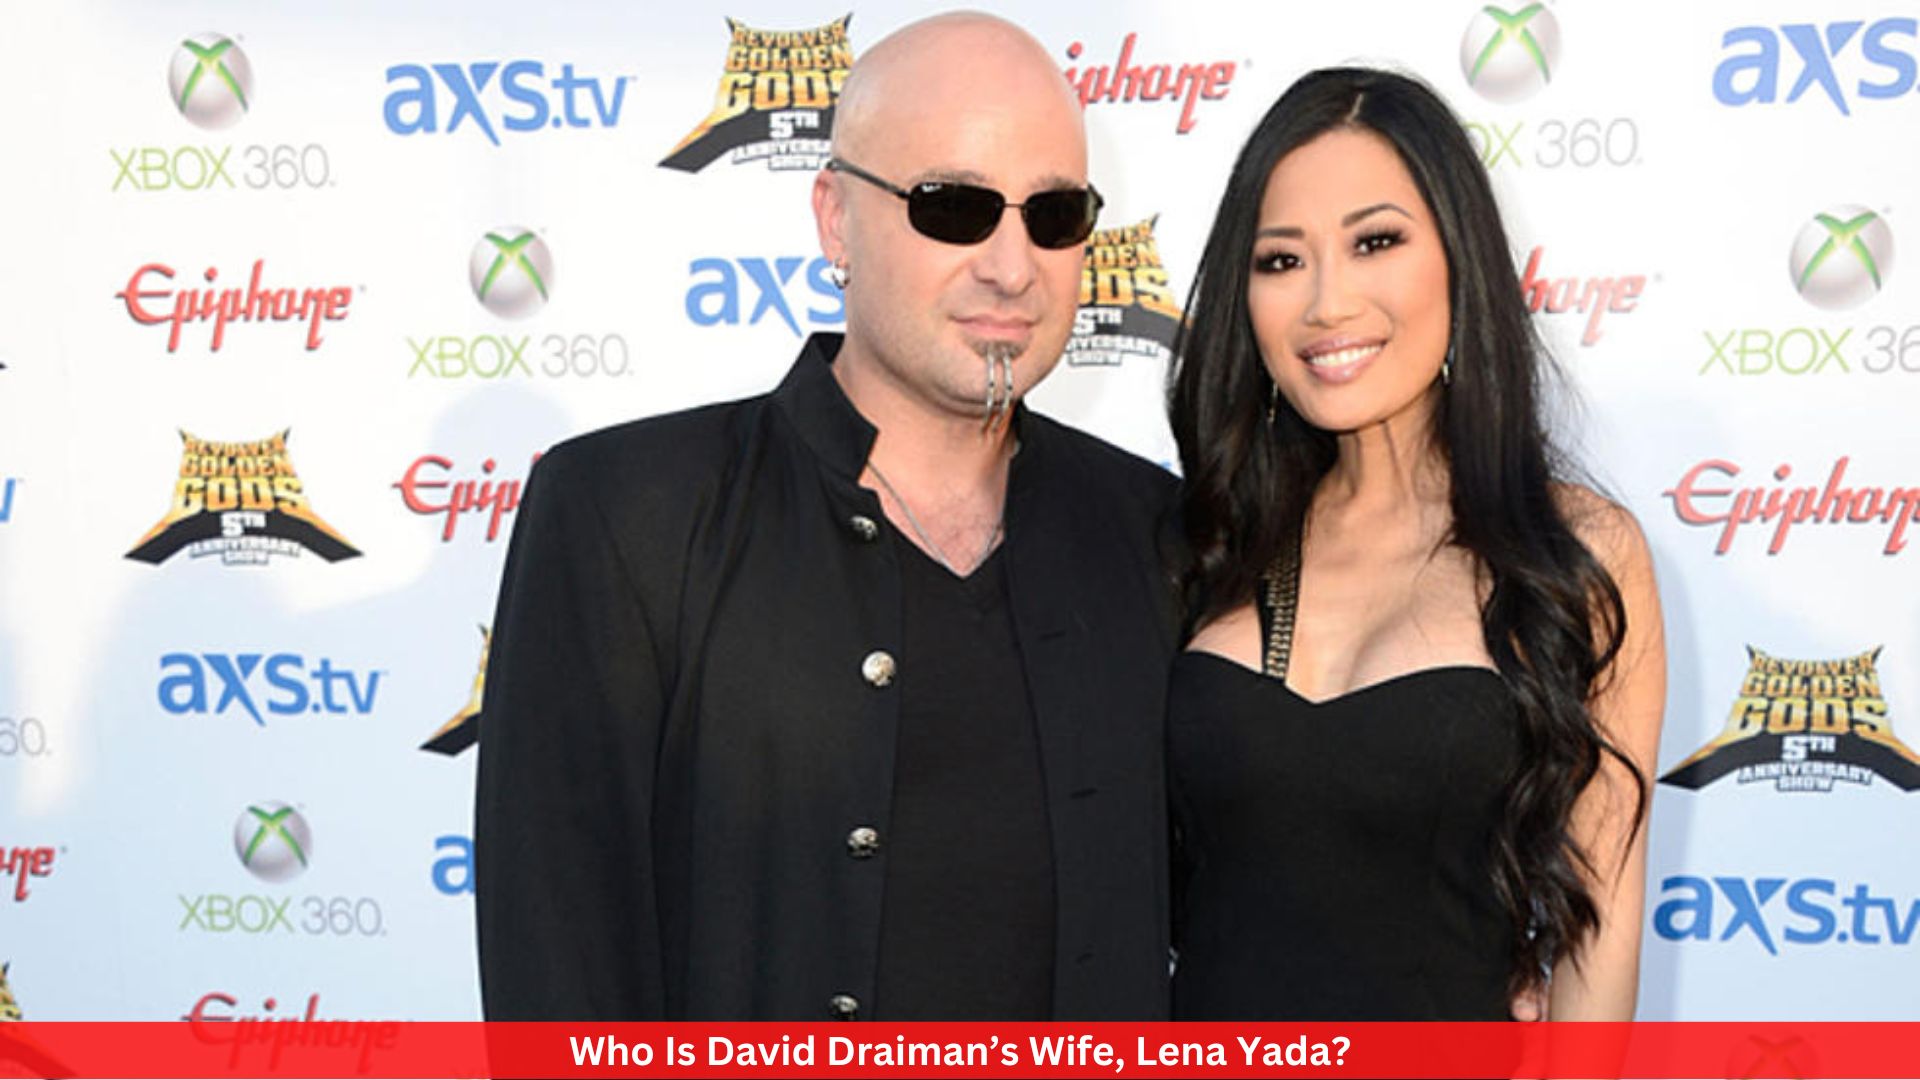 Who Is David Draiman’s Wife, Lena Yada?